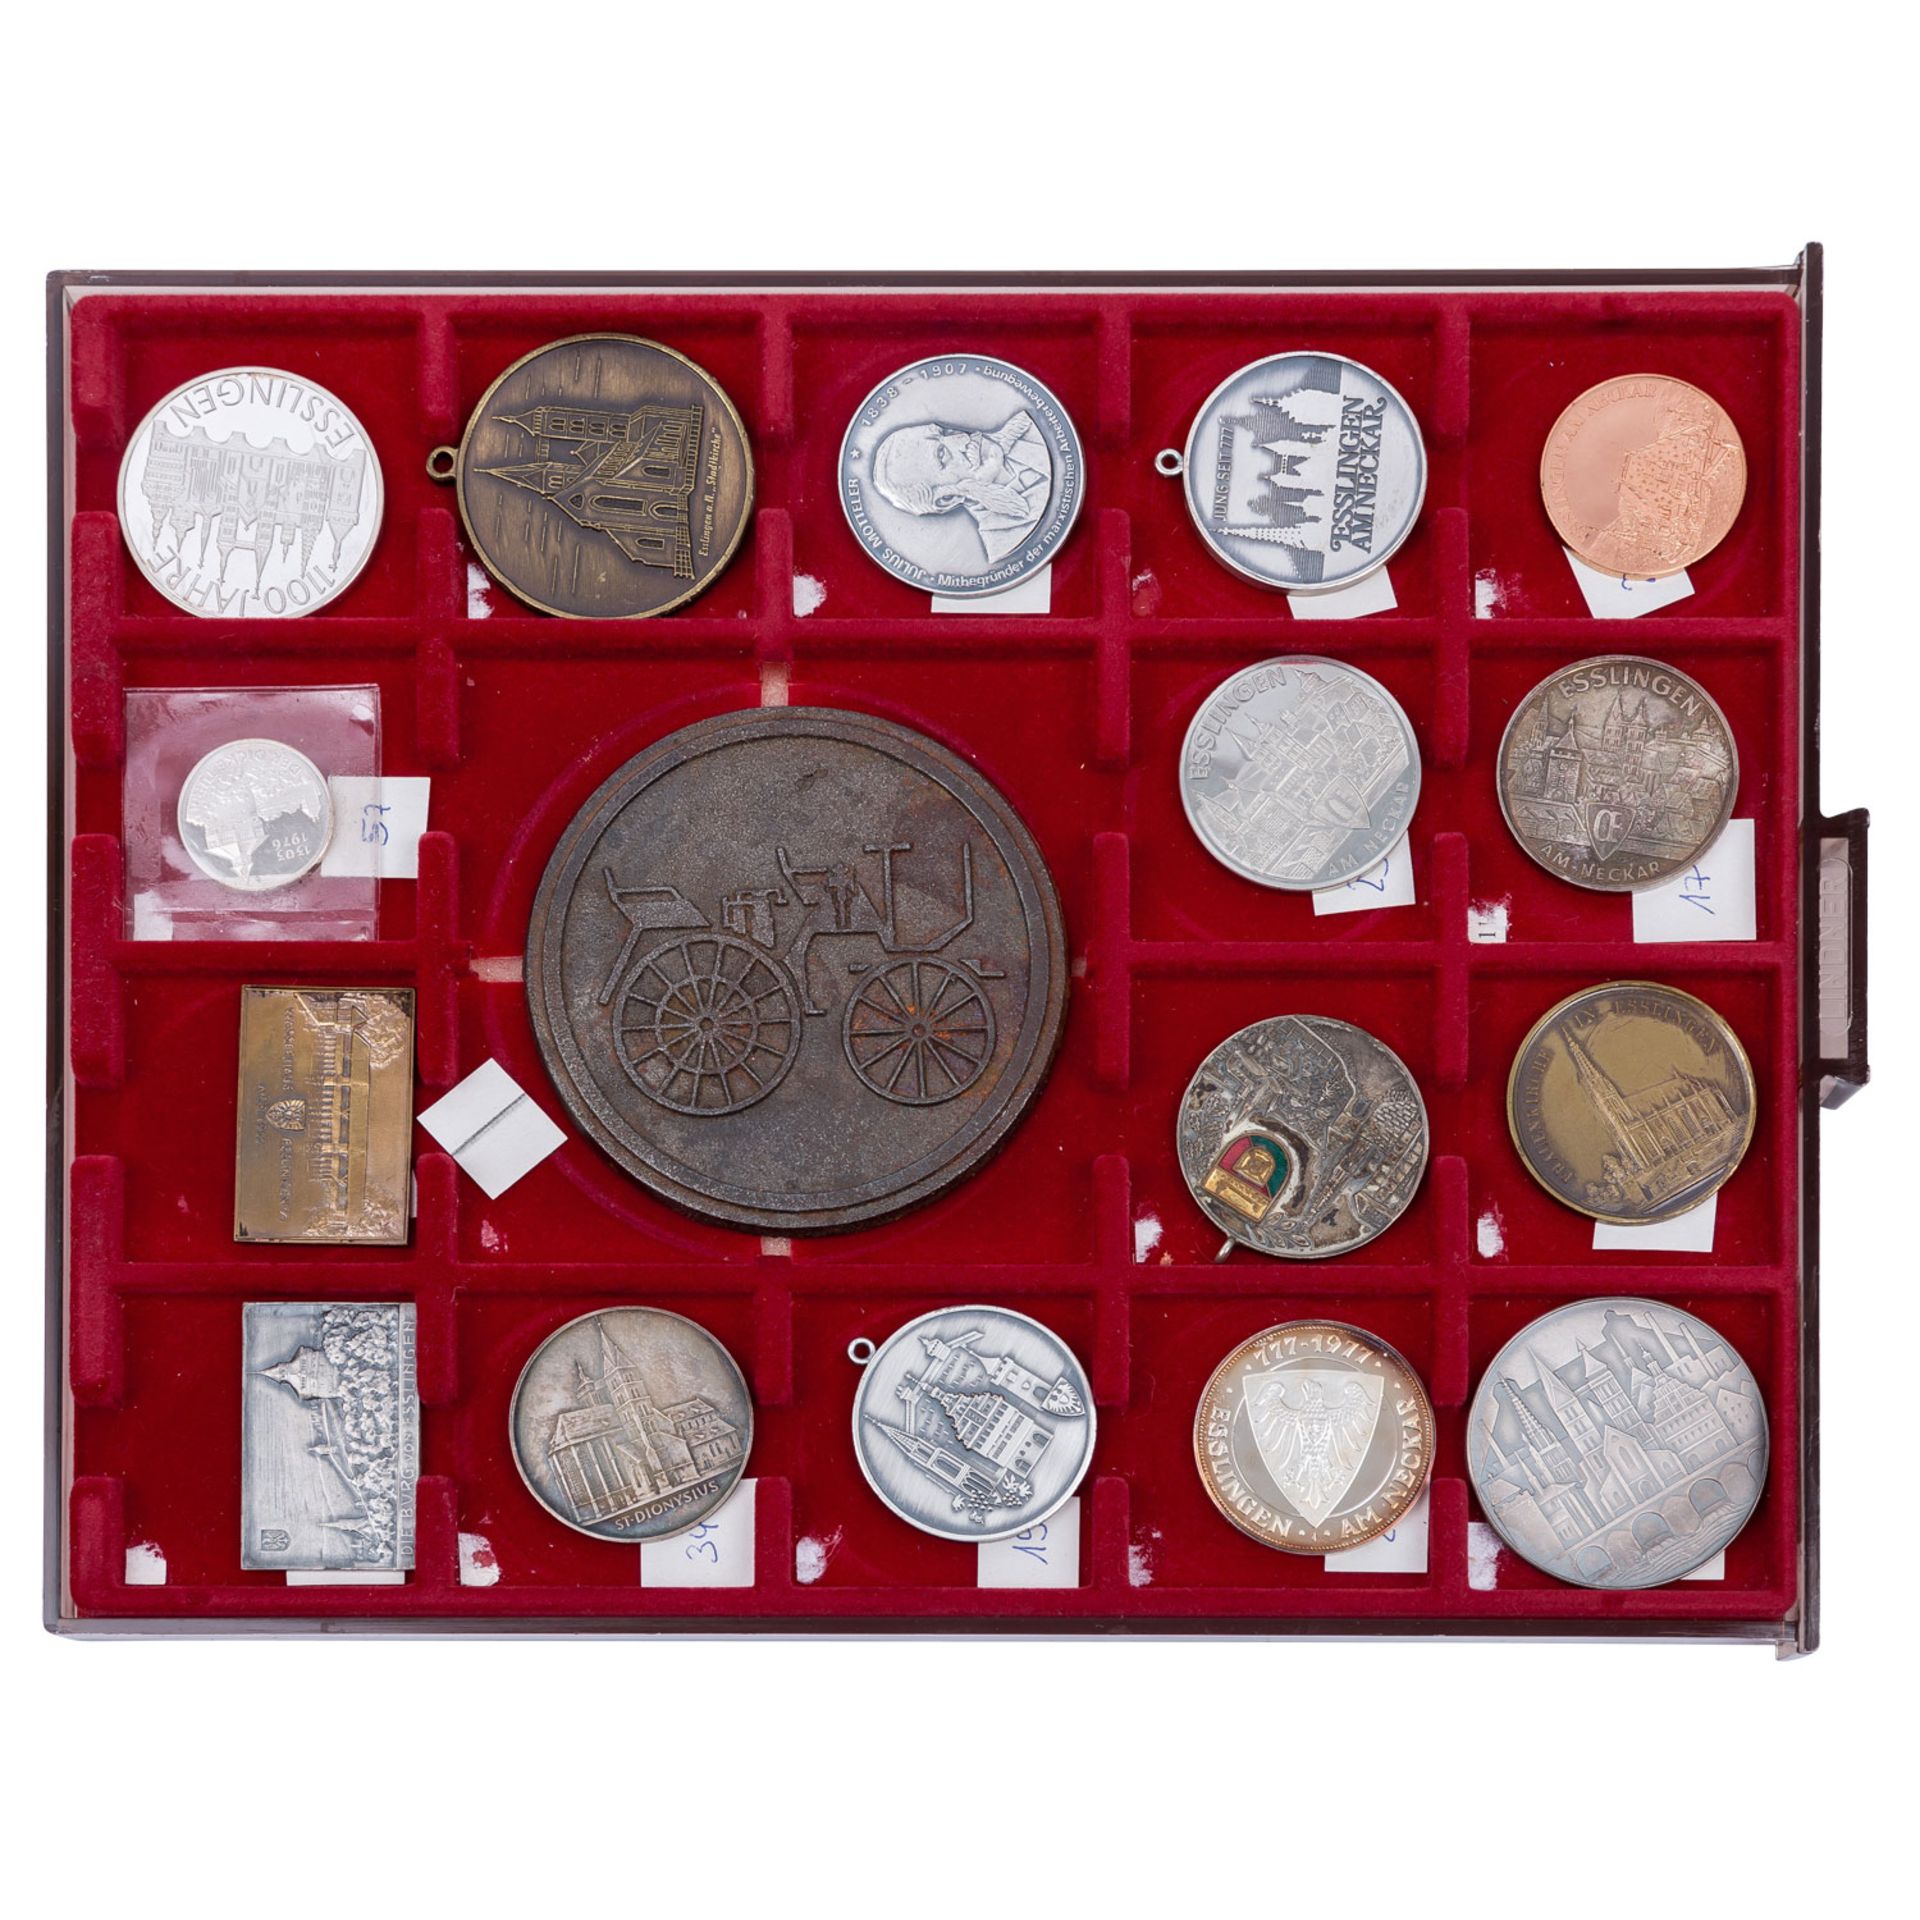 Esslingen - Spannende Großsammlung von Münzen, Medaillen, Plaketten und weiteres über die Stadtgesch - Bild 4 aus 7